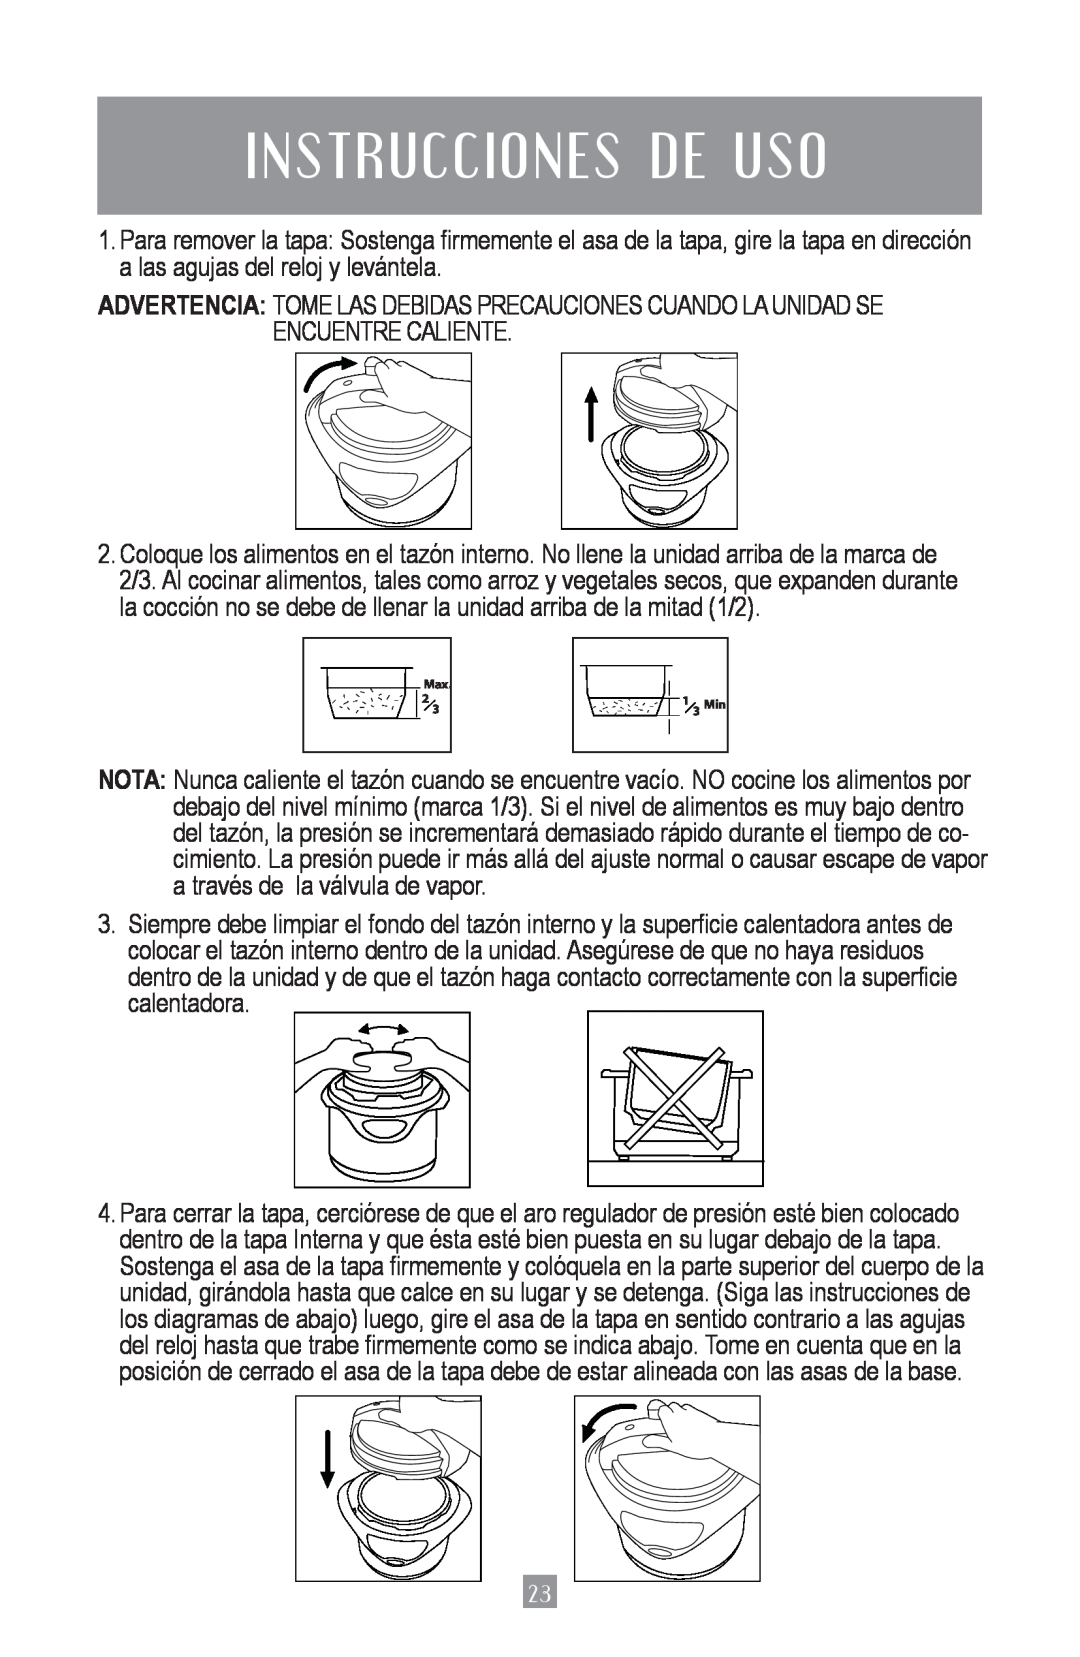 Oster 4801, Oster Digital Pressure Cooker instruction manual In S Truc C Io N E S De Uso, Max, 1 3 Min 